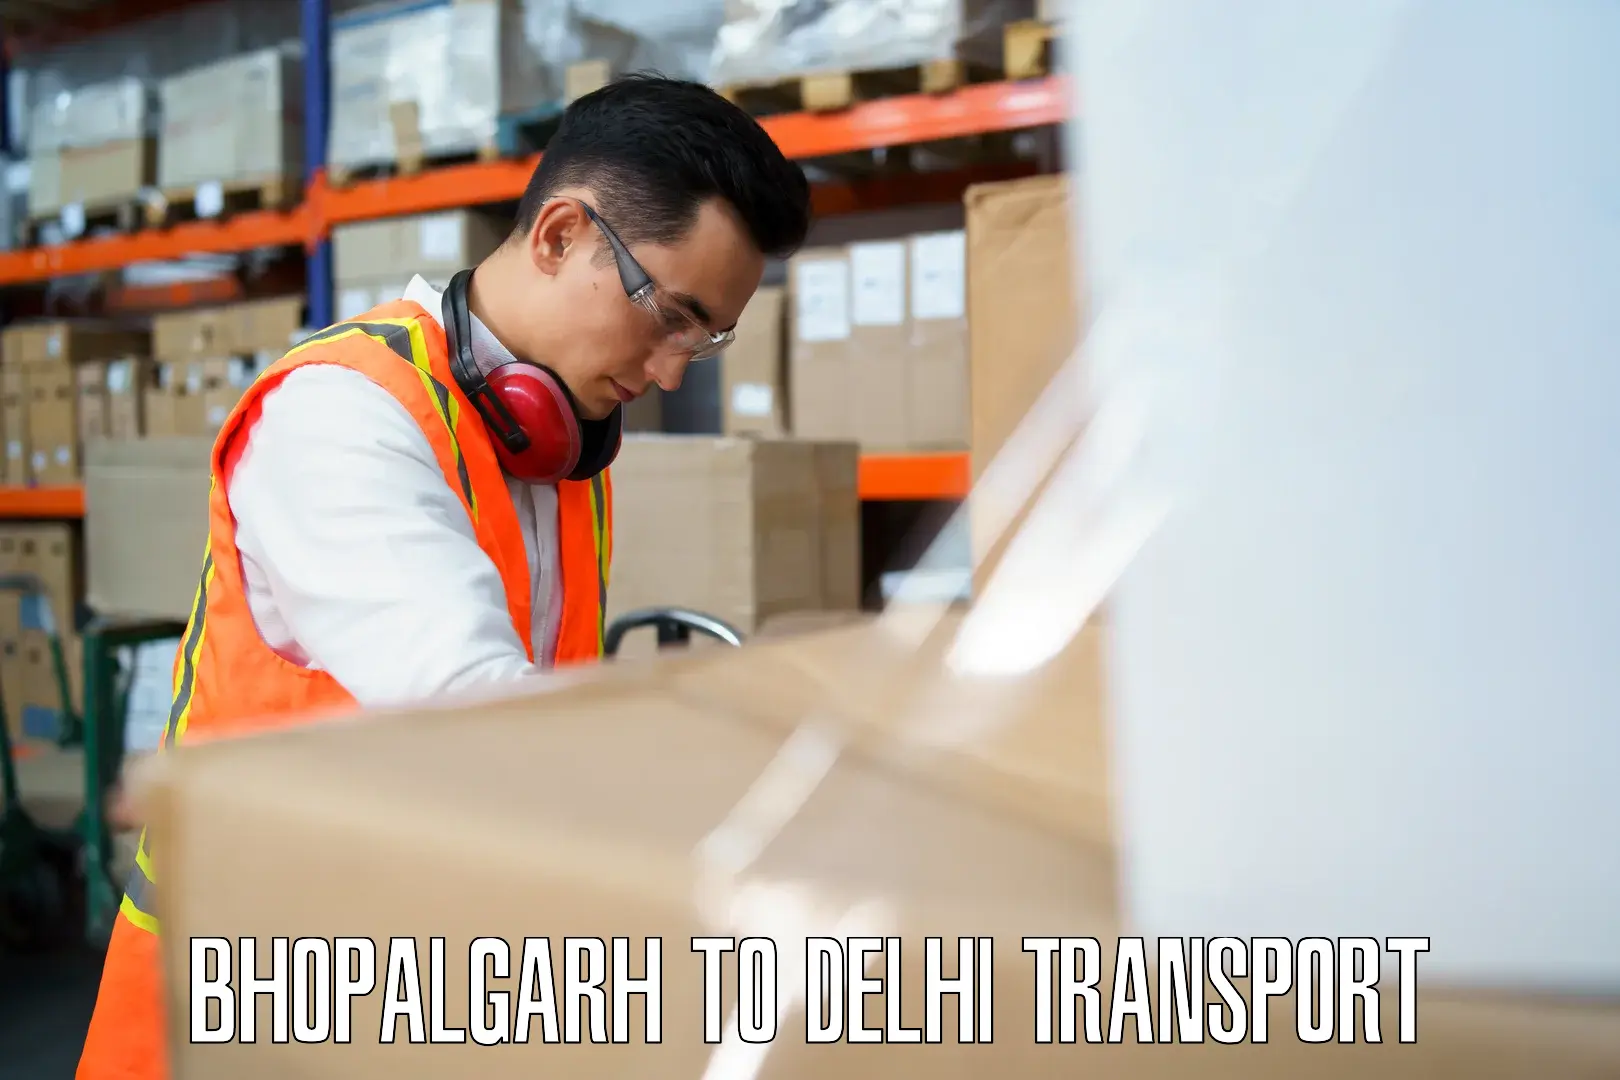 Pick up transport service in Bhopalgarh to East Delhi